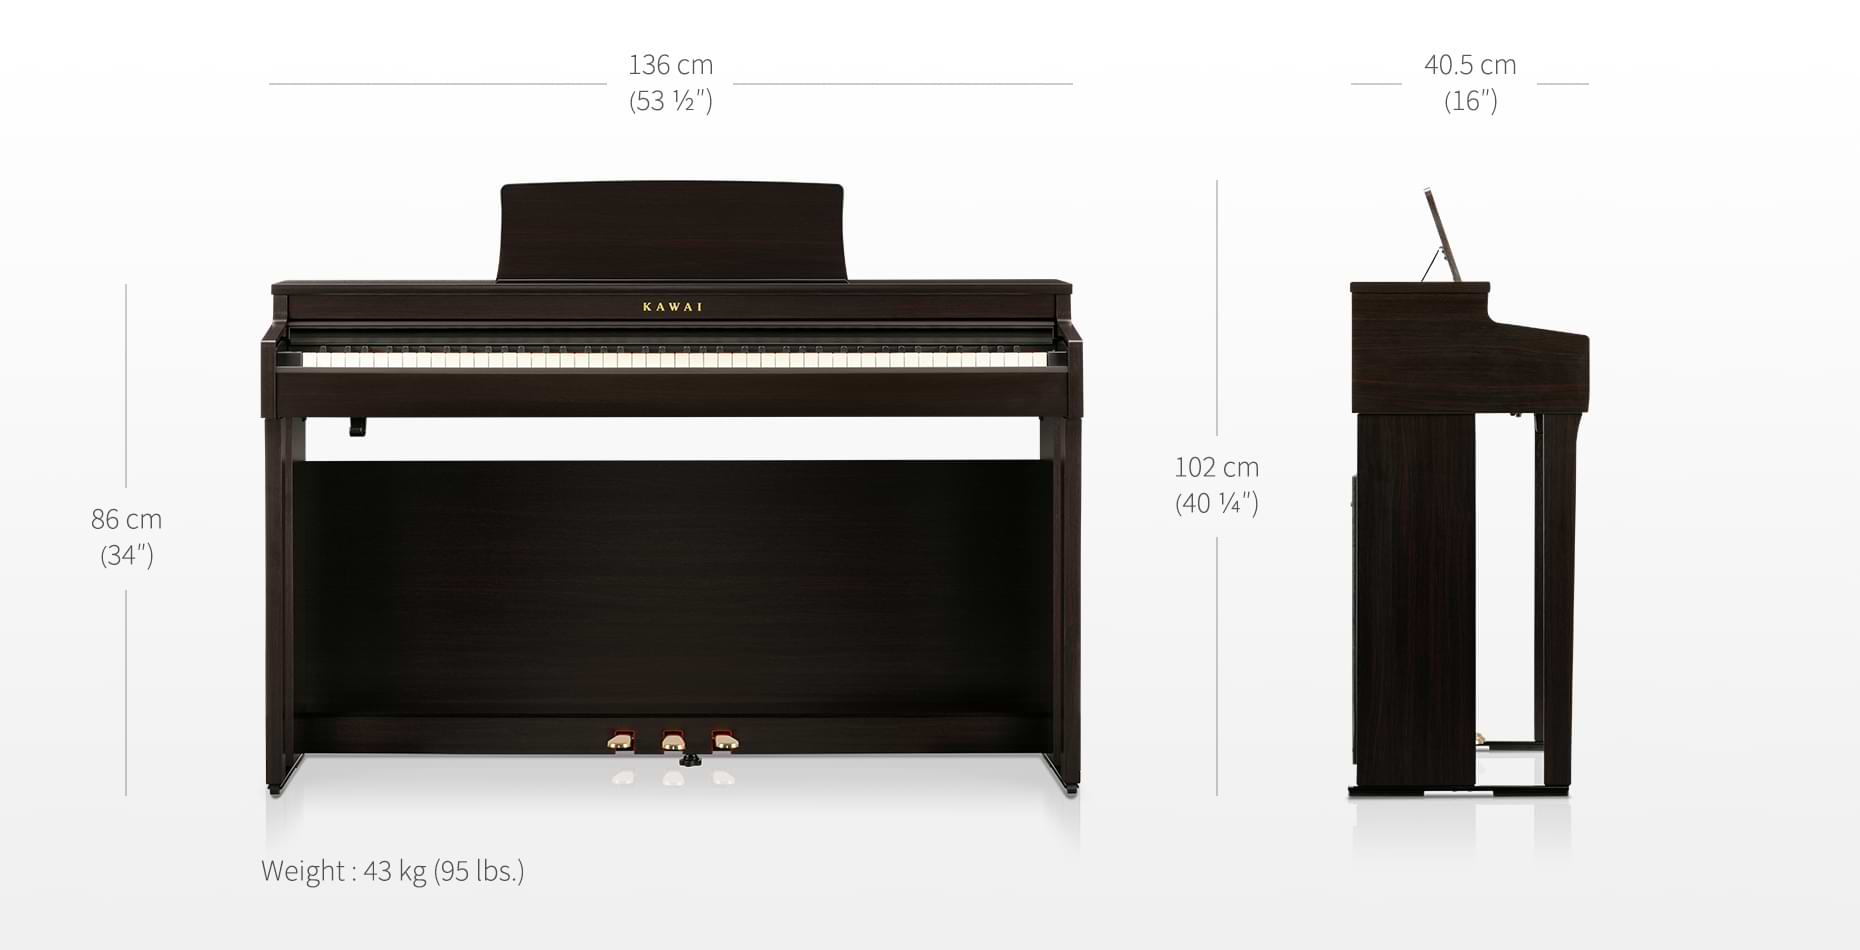 Piano Digital Kawai CN201 Black